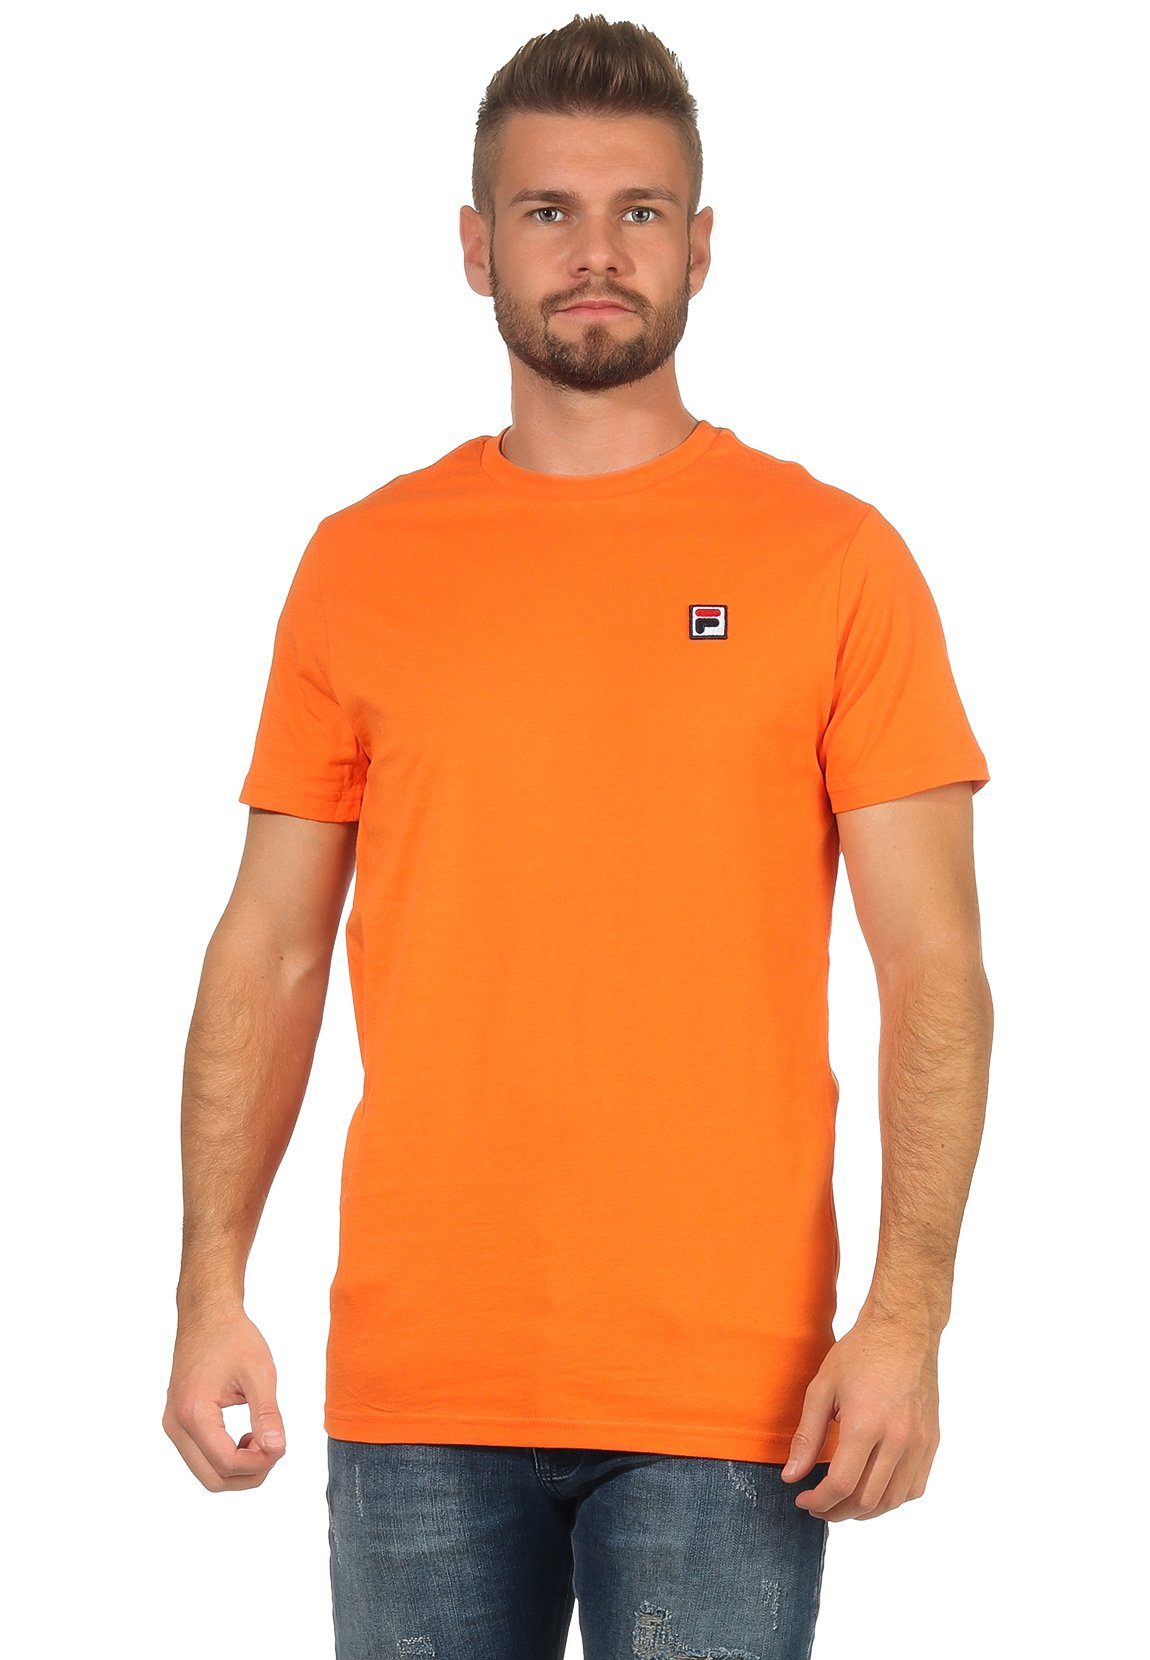 S62 T-Shirt Mandarin Orange Fila T-Shirt Orange SEAMUS Fila SS 682393 MEN TEE Herren